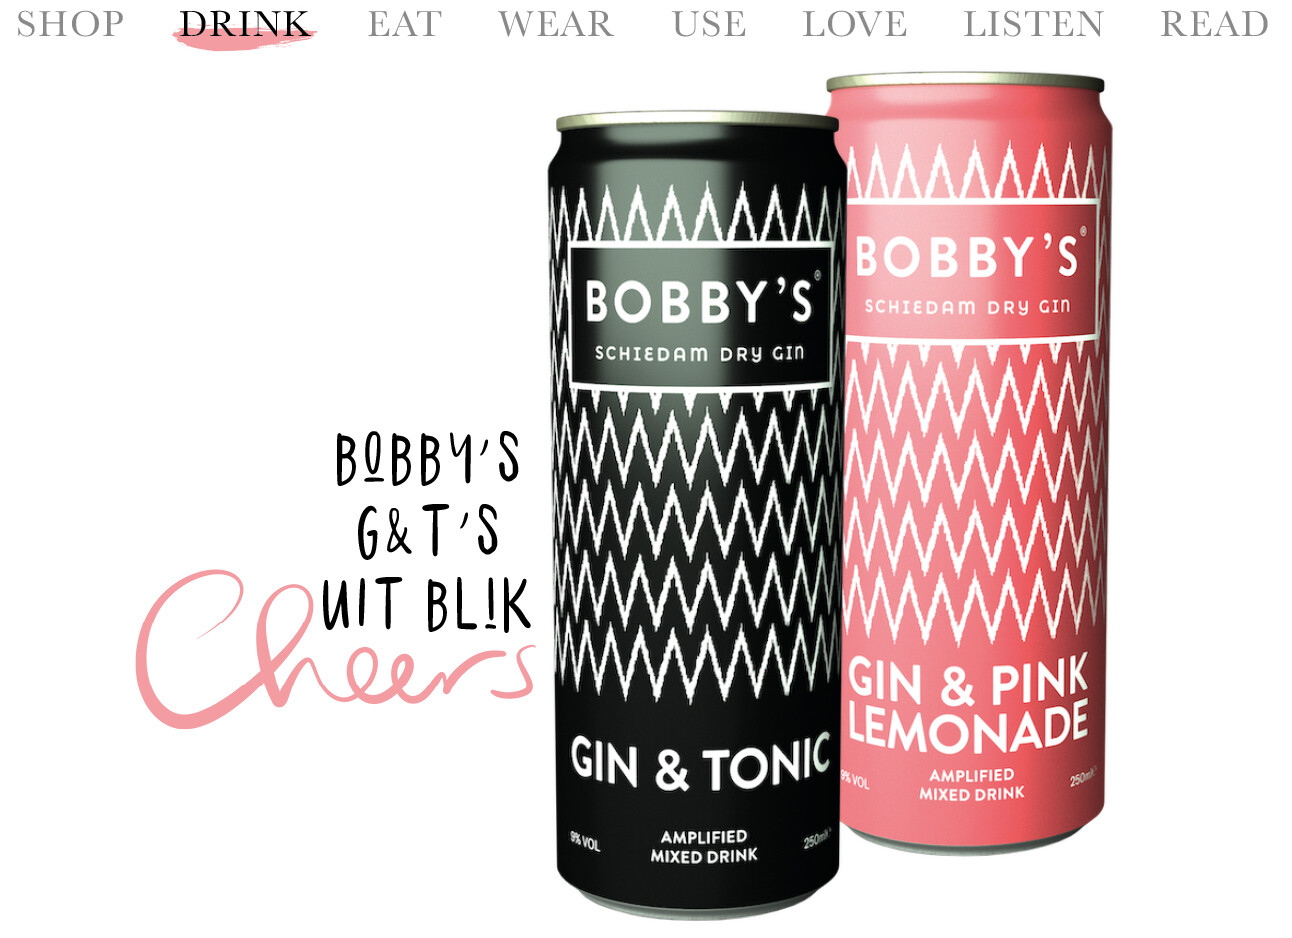 Bobby's gin & tonic uit blik